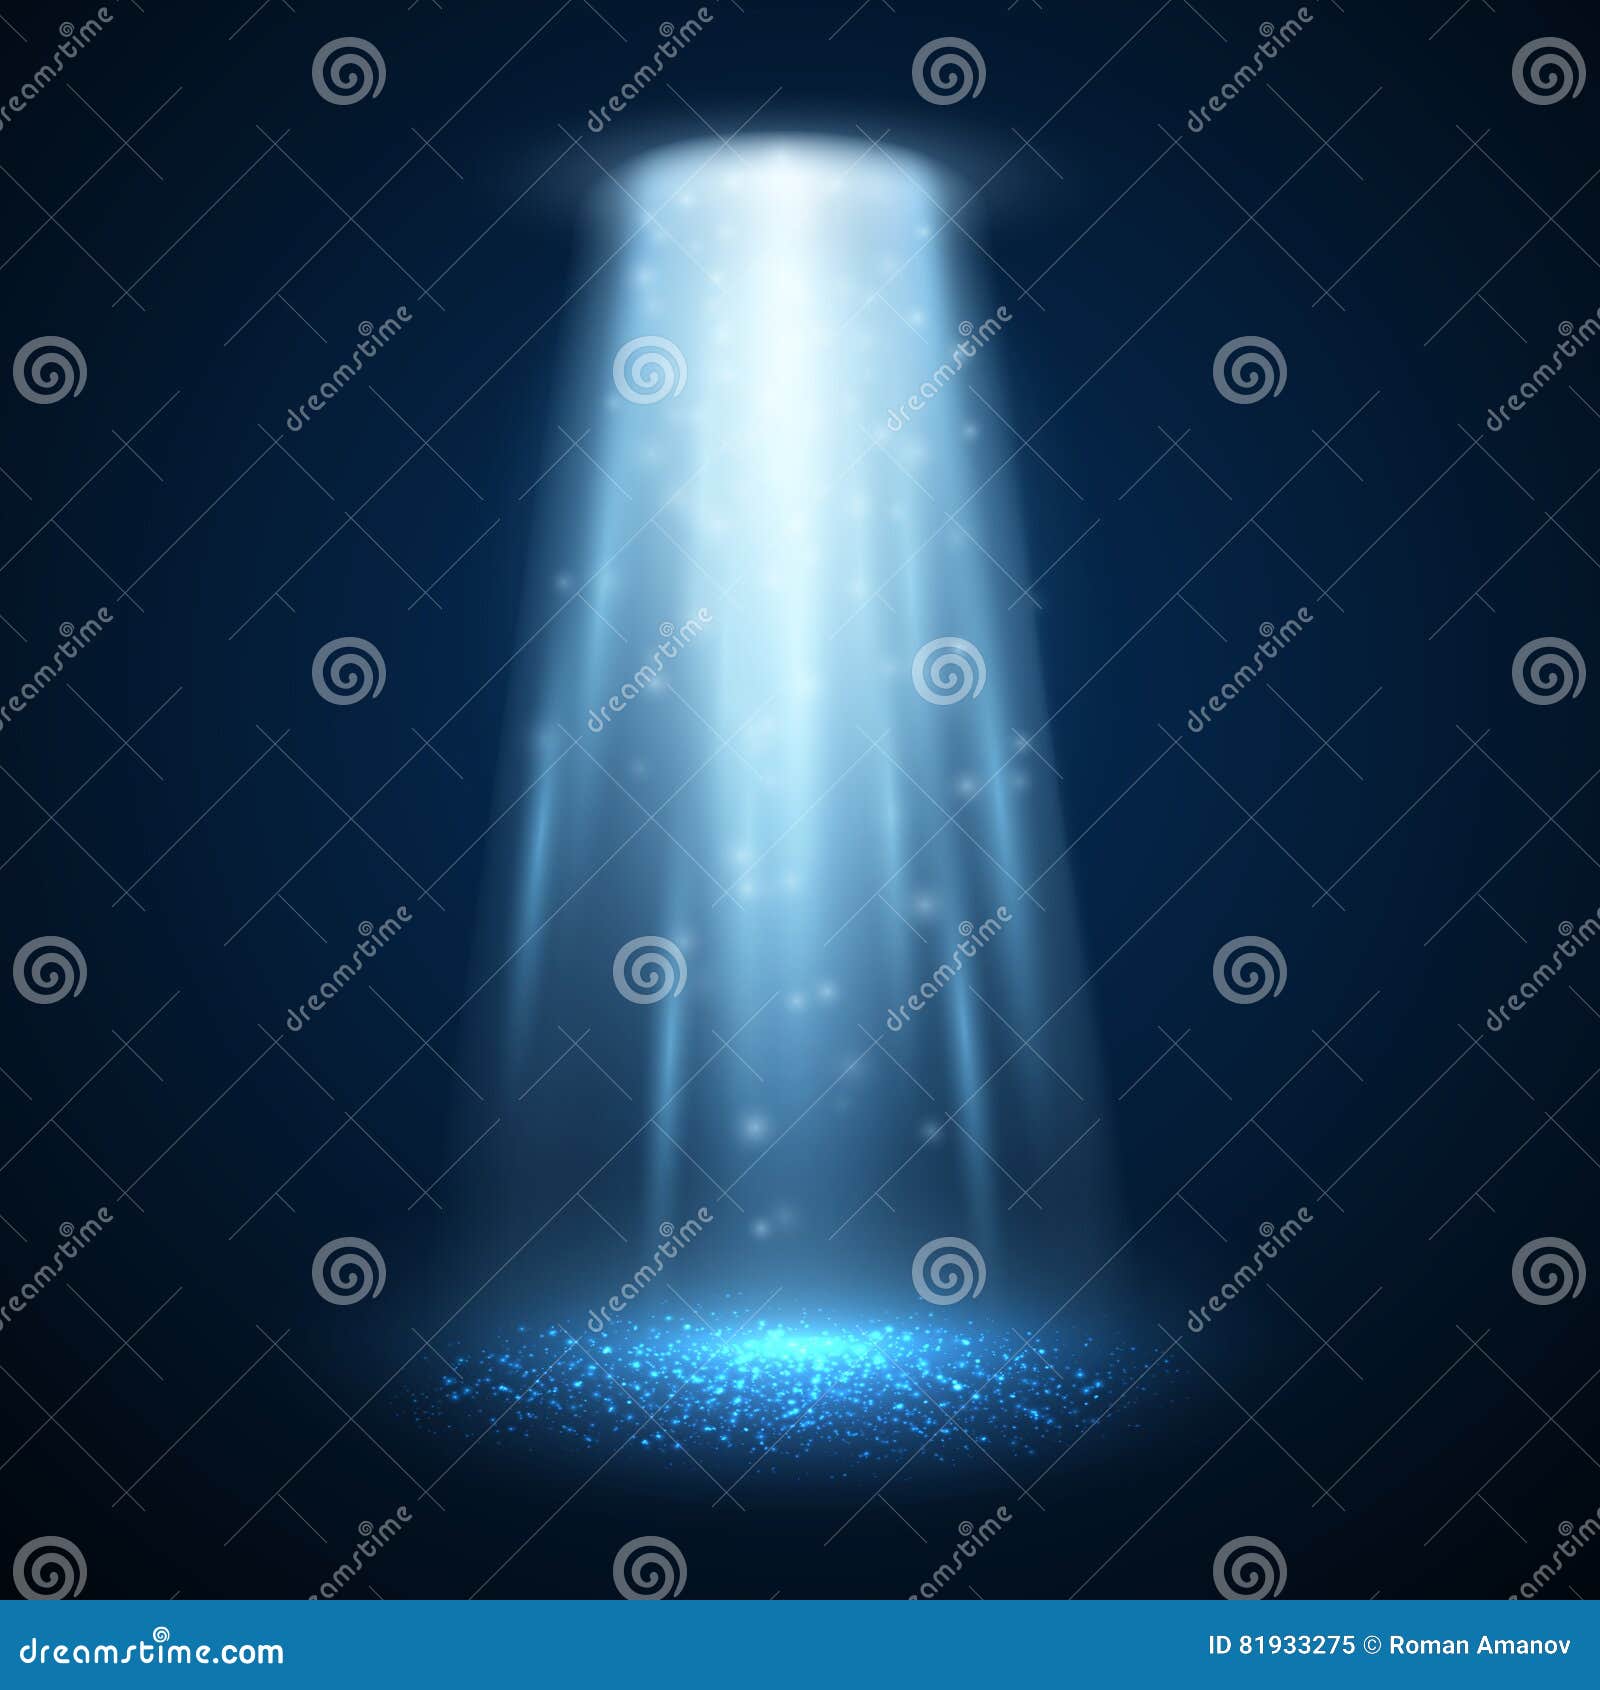 ufo light beam .  